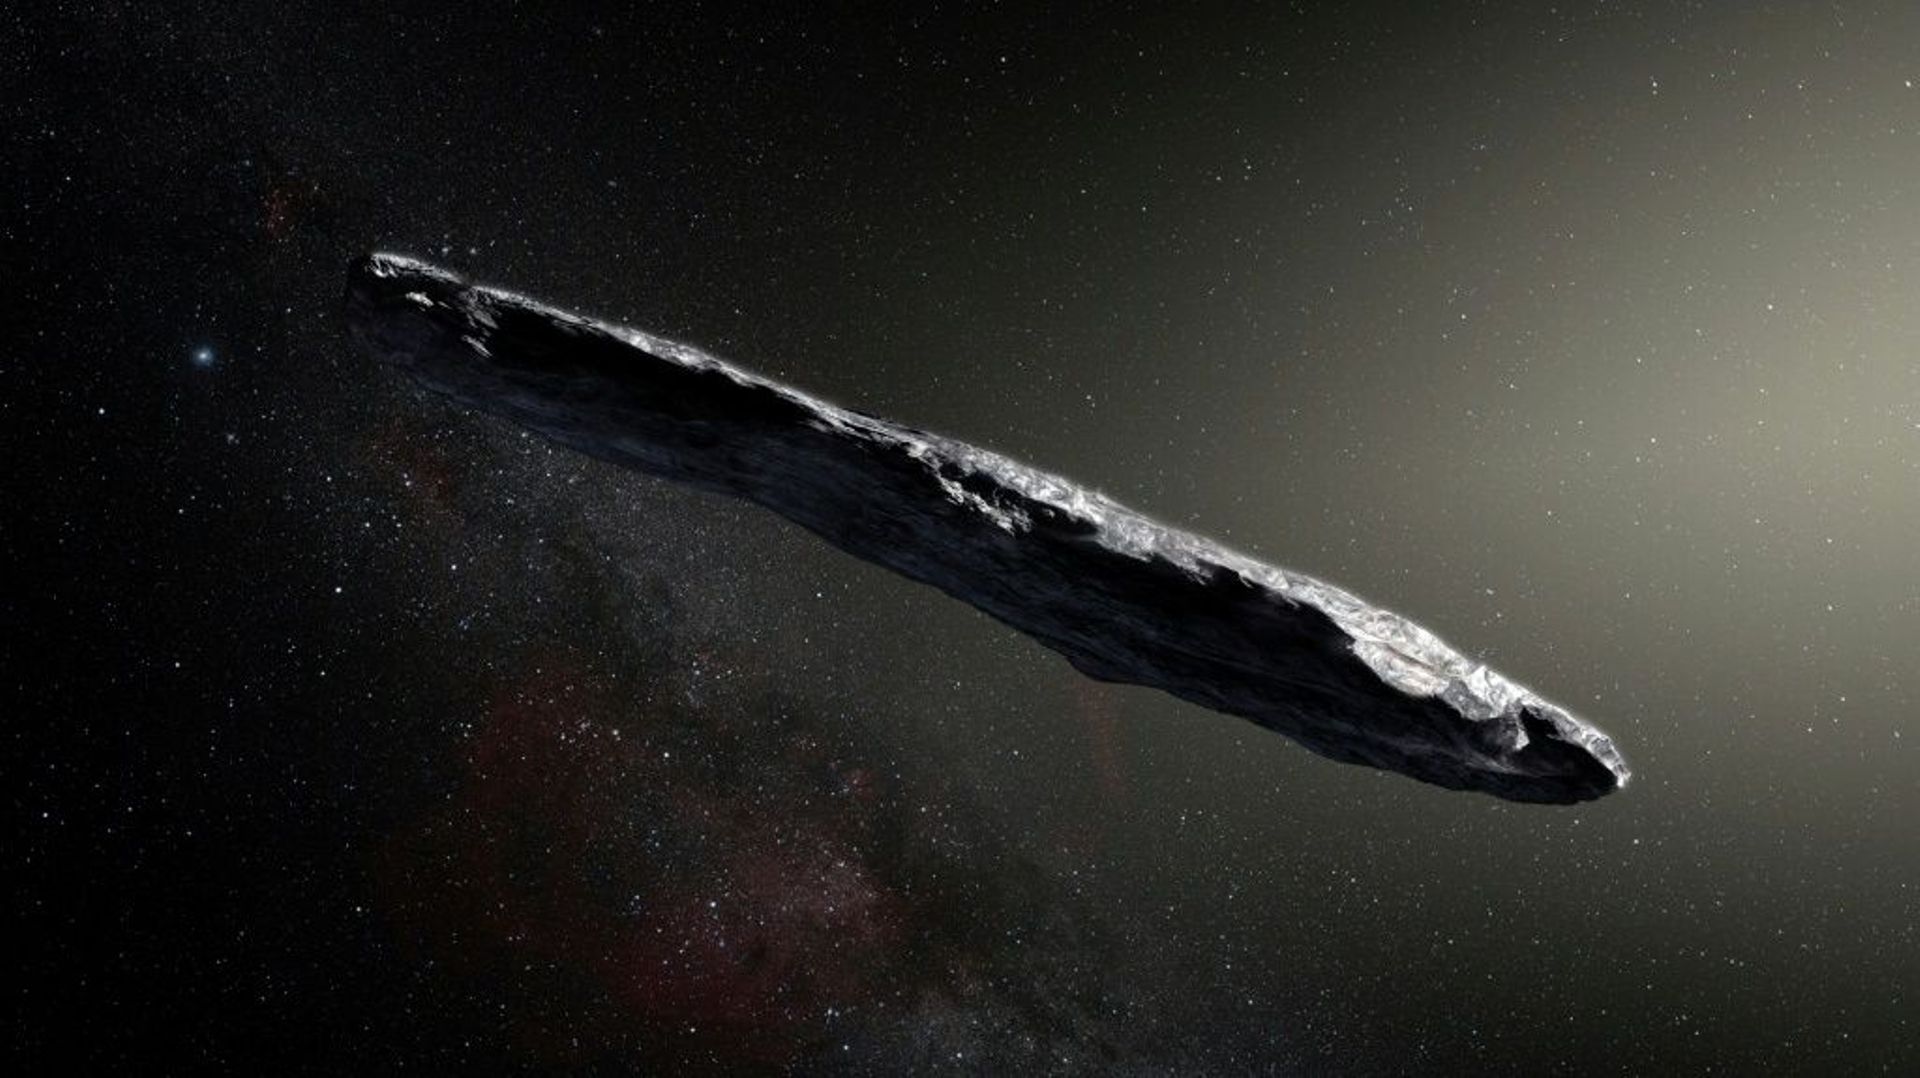 Image d'artiste d'Oumuamua, un asteroide interstellaire ayant la forme d'un cigare, sur une photo fournie par l'Observatoire européen austral le 20 novembre 2017 